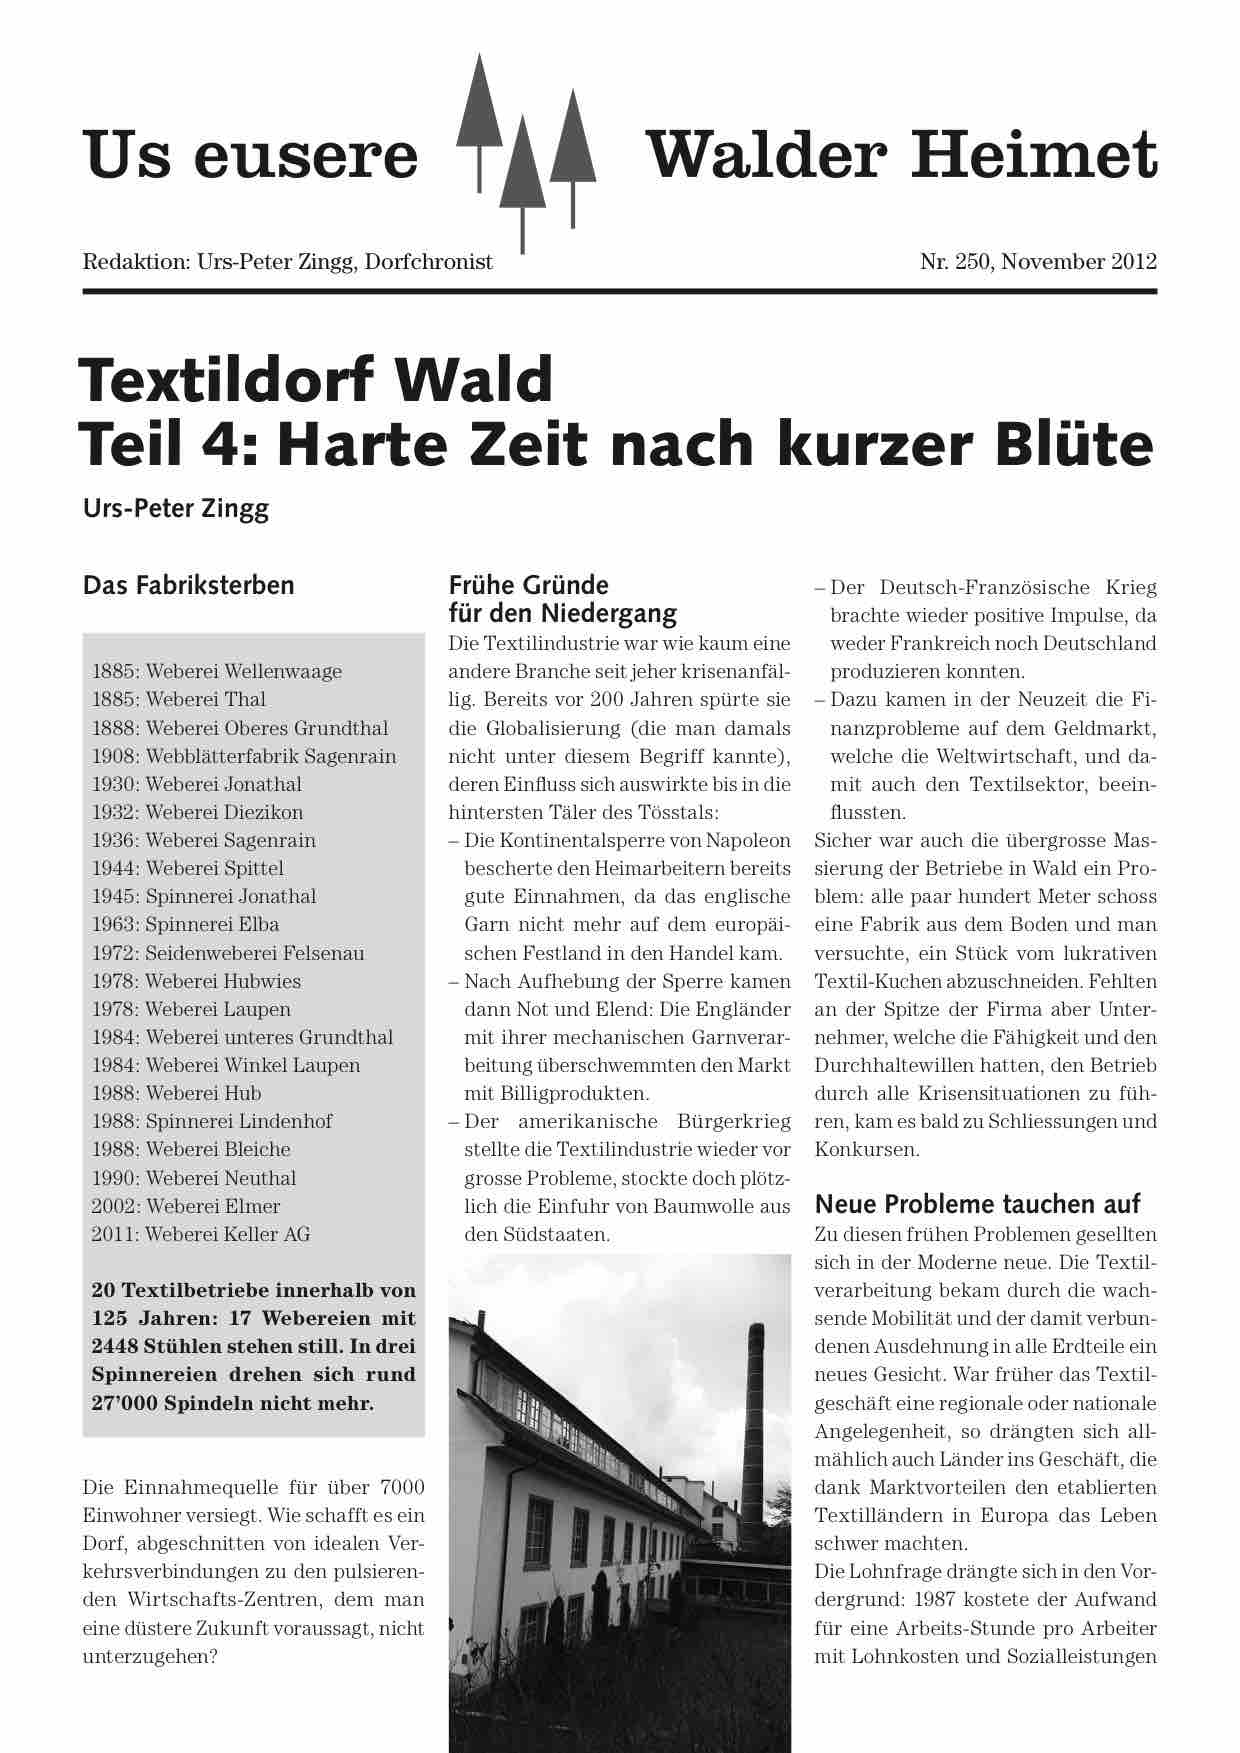 Textildorf (4)